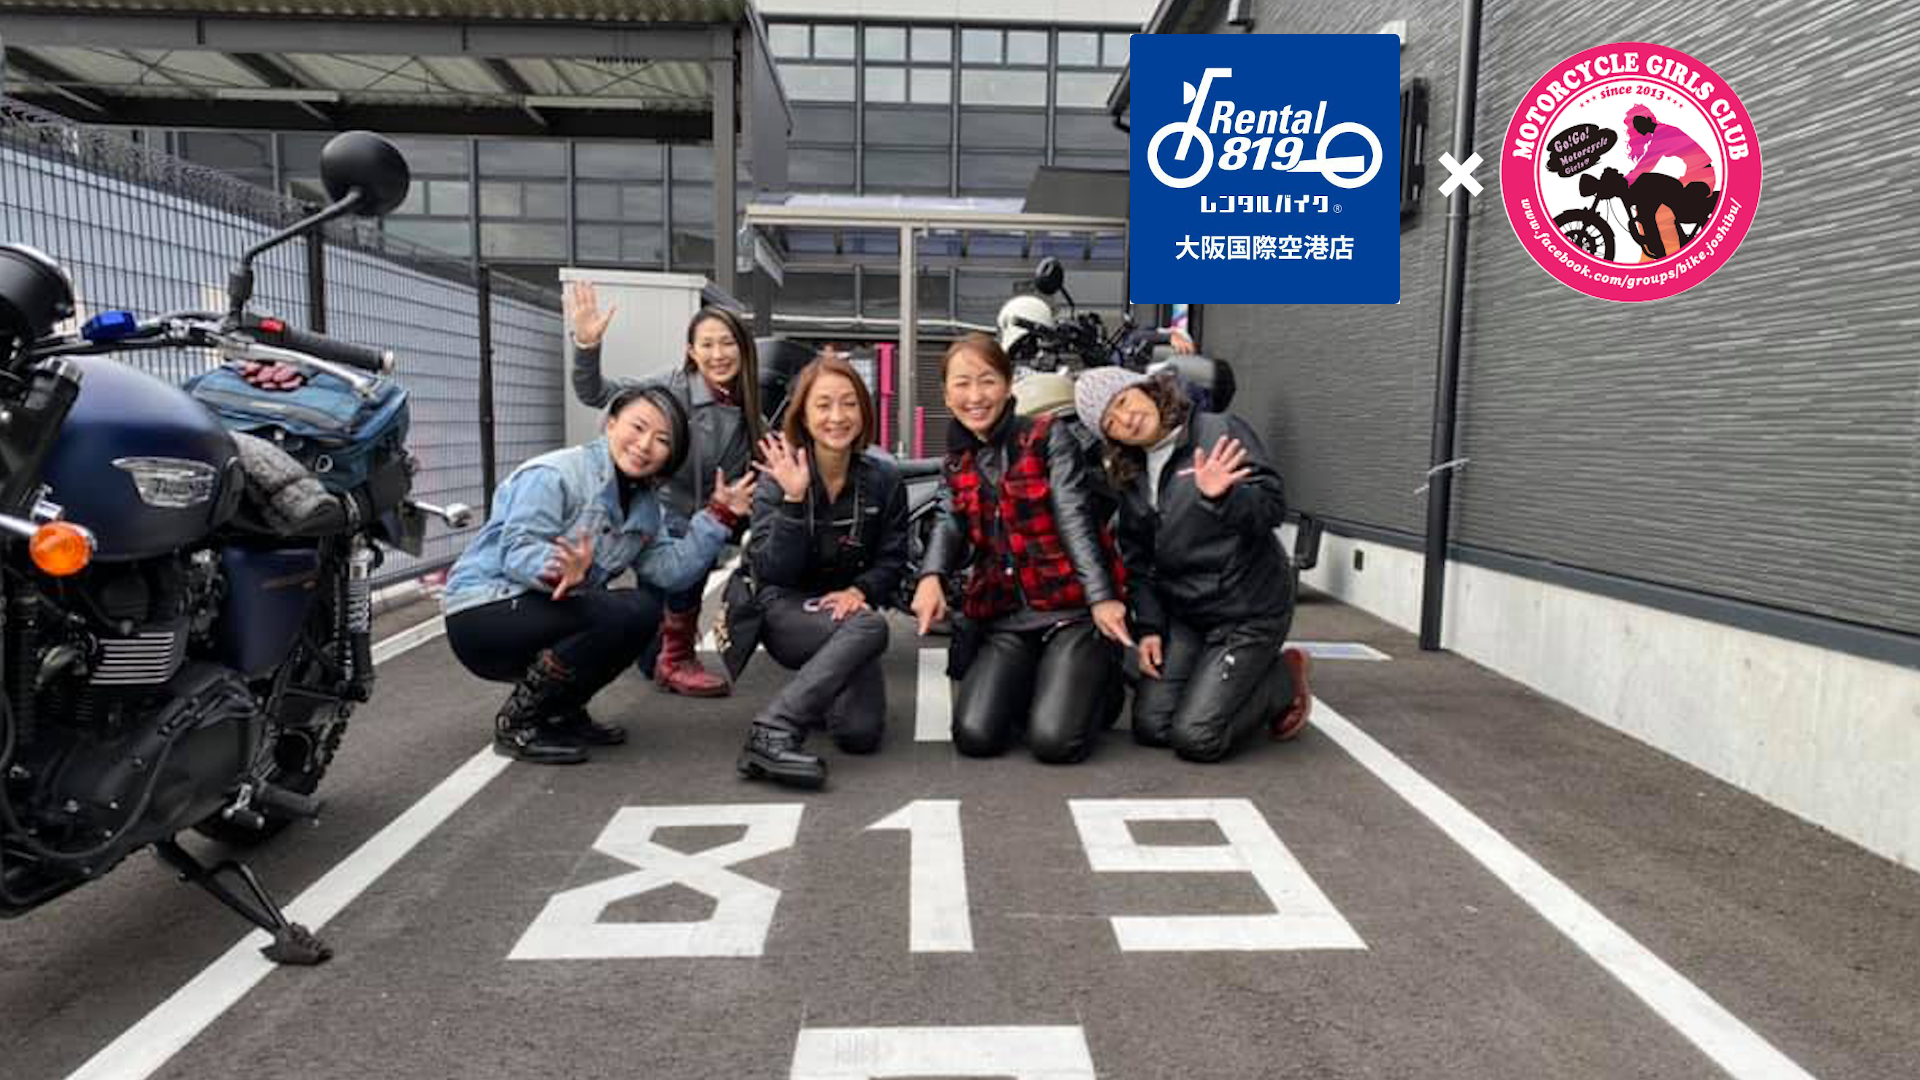 内容が変更になりました 参加者募集 レンタル819 大阪国際空港店 バイク女子部 コラボ女子ツーリング バイク女子部 通信